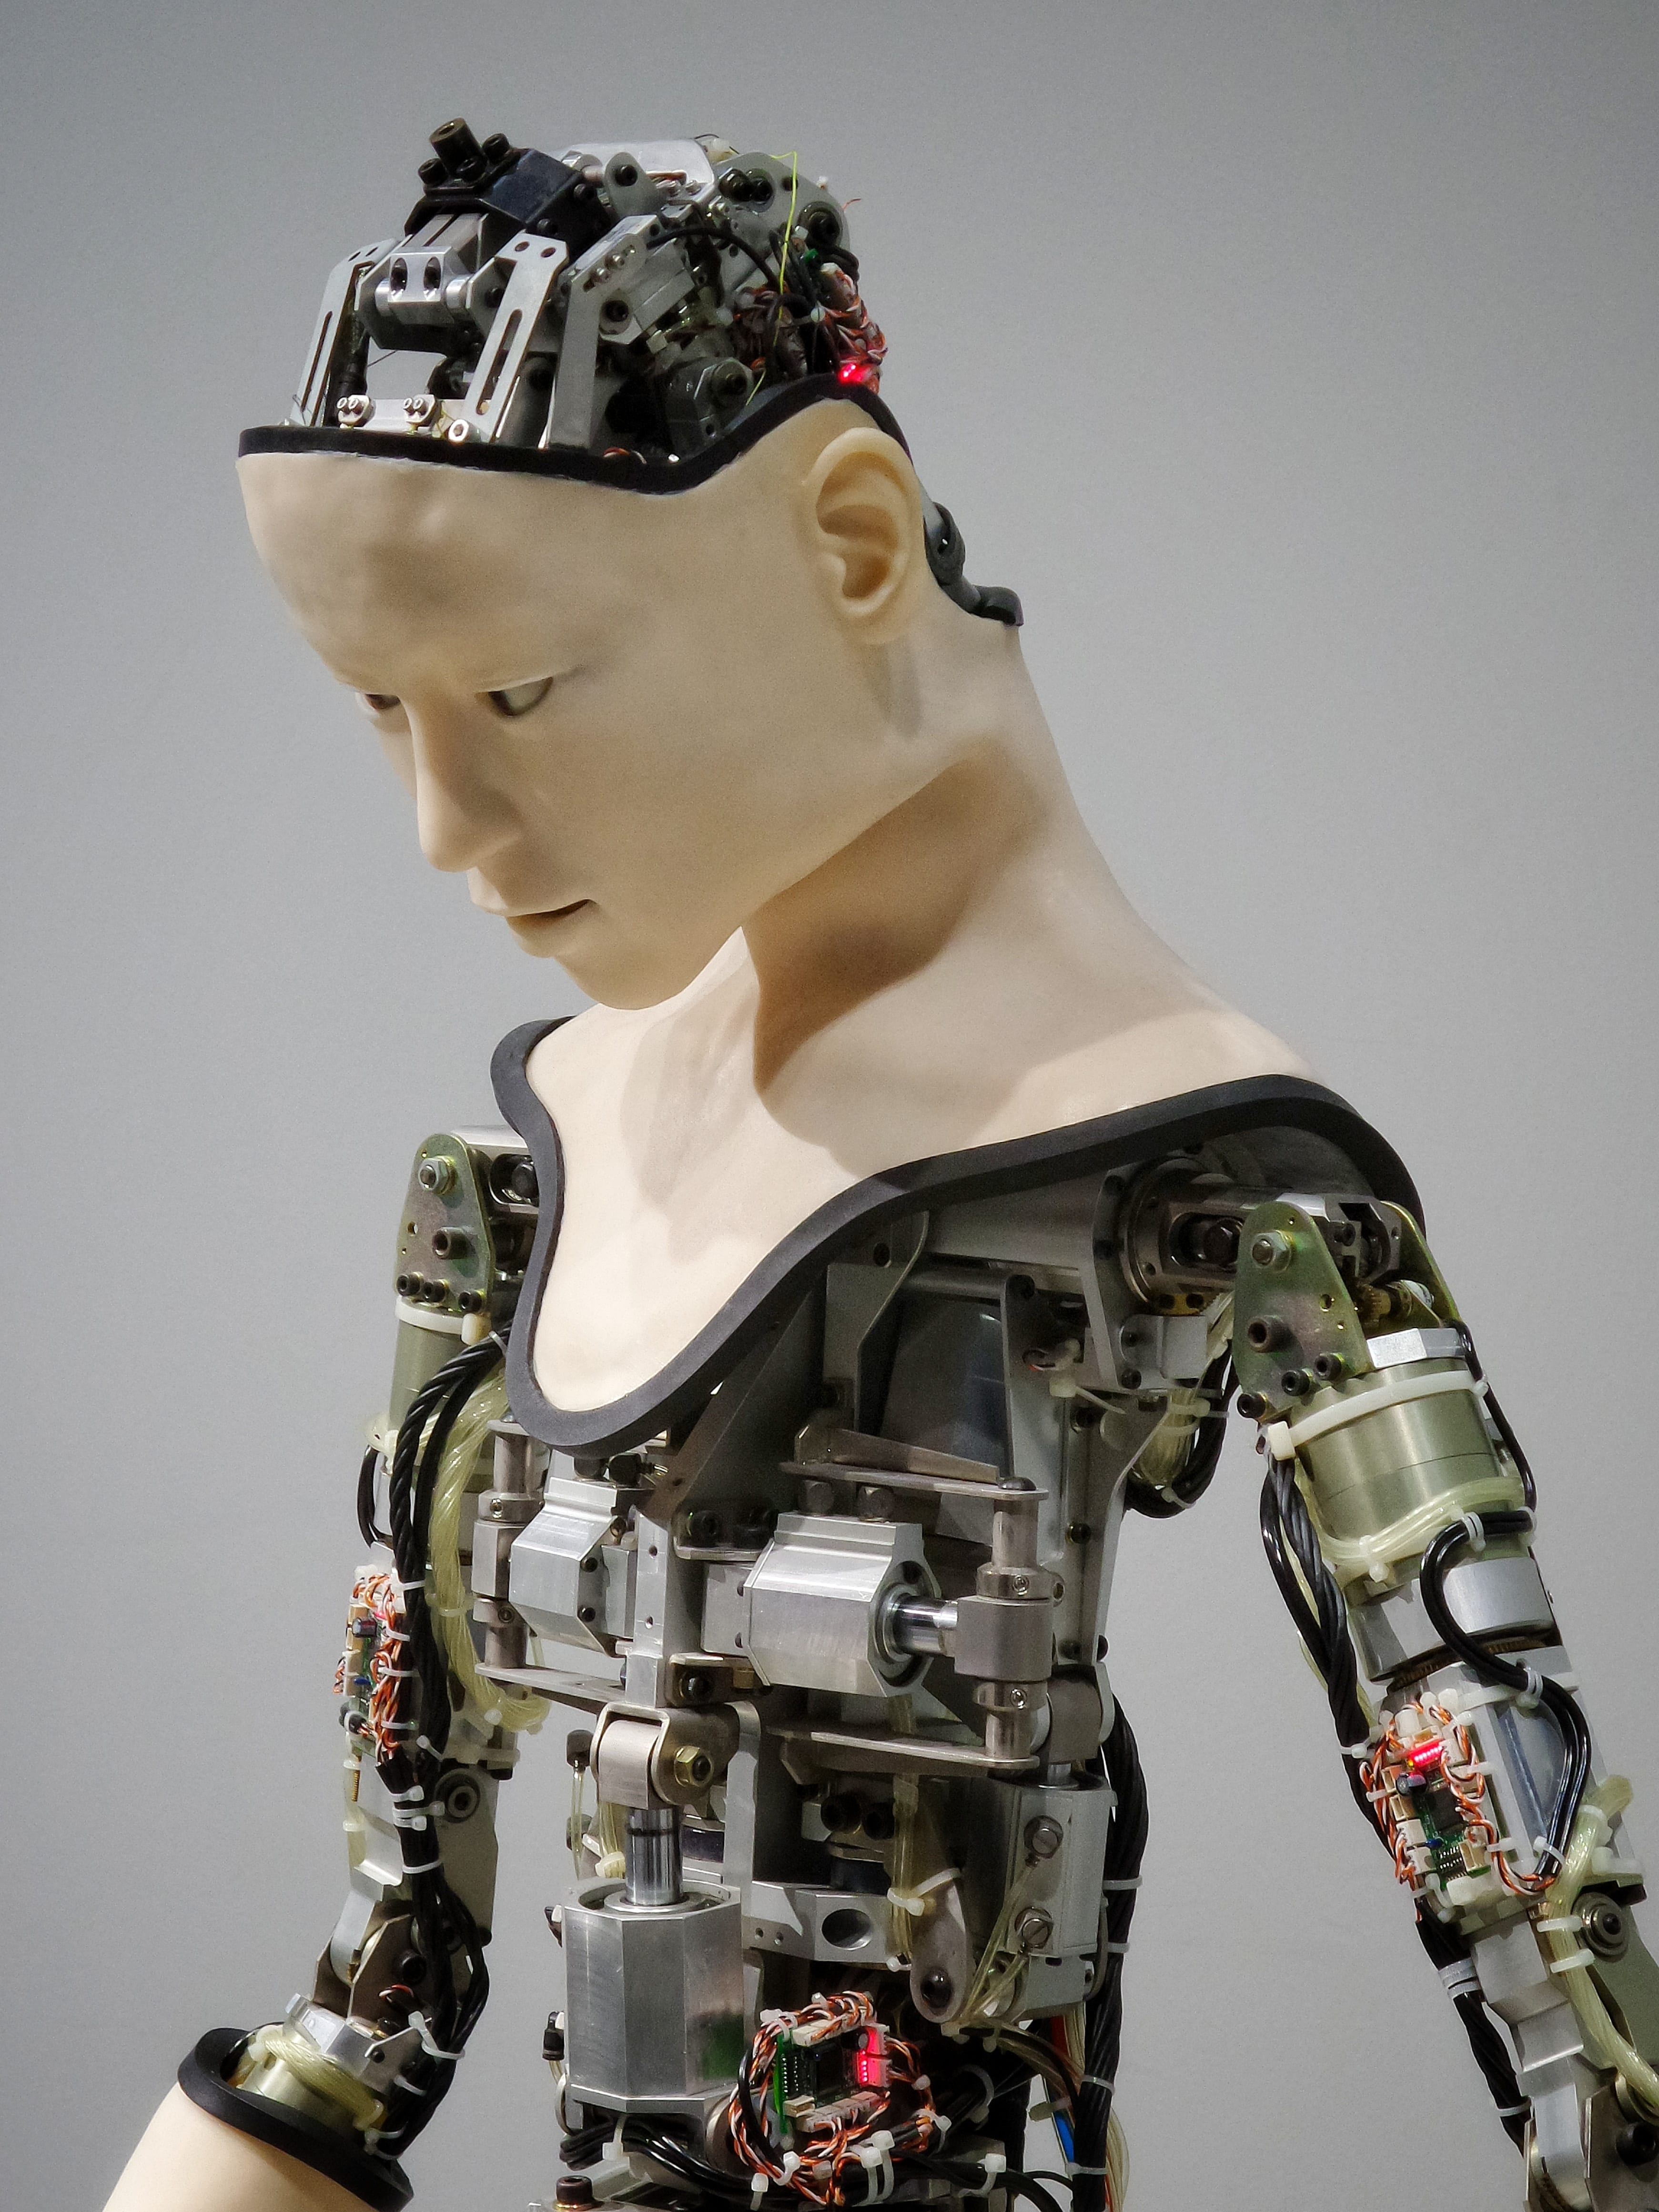 Humanoid robot; image by Franck V., via Unsplash.com.